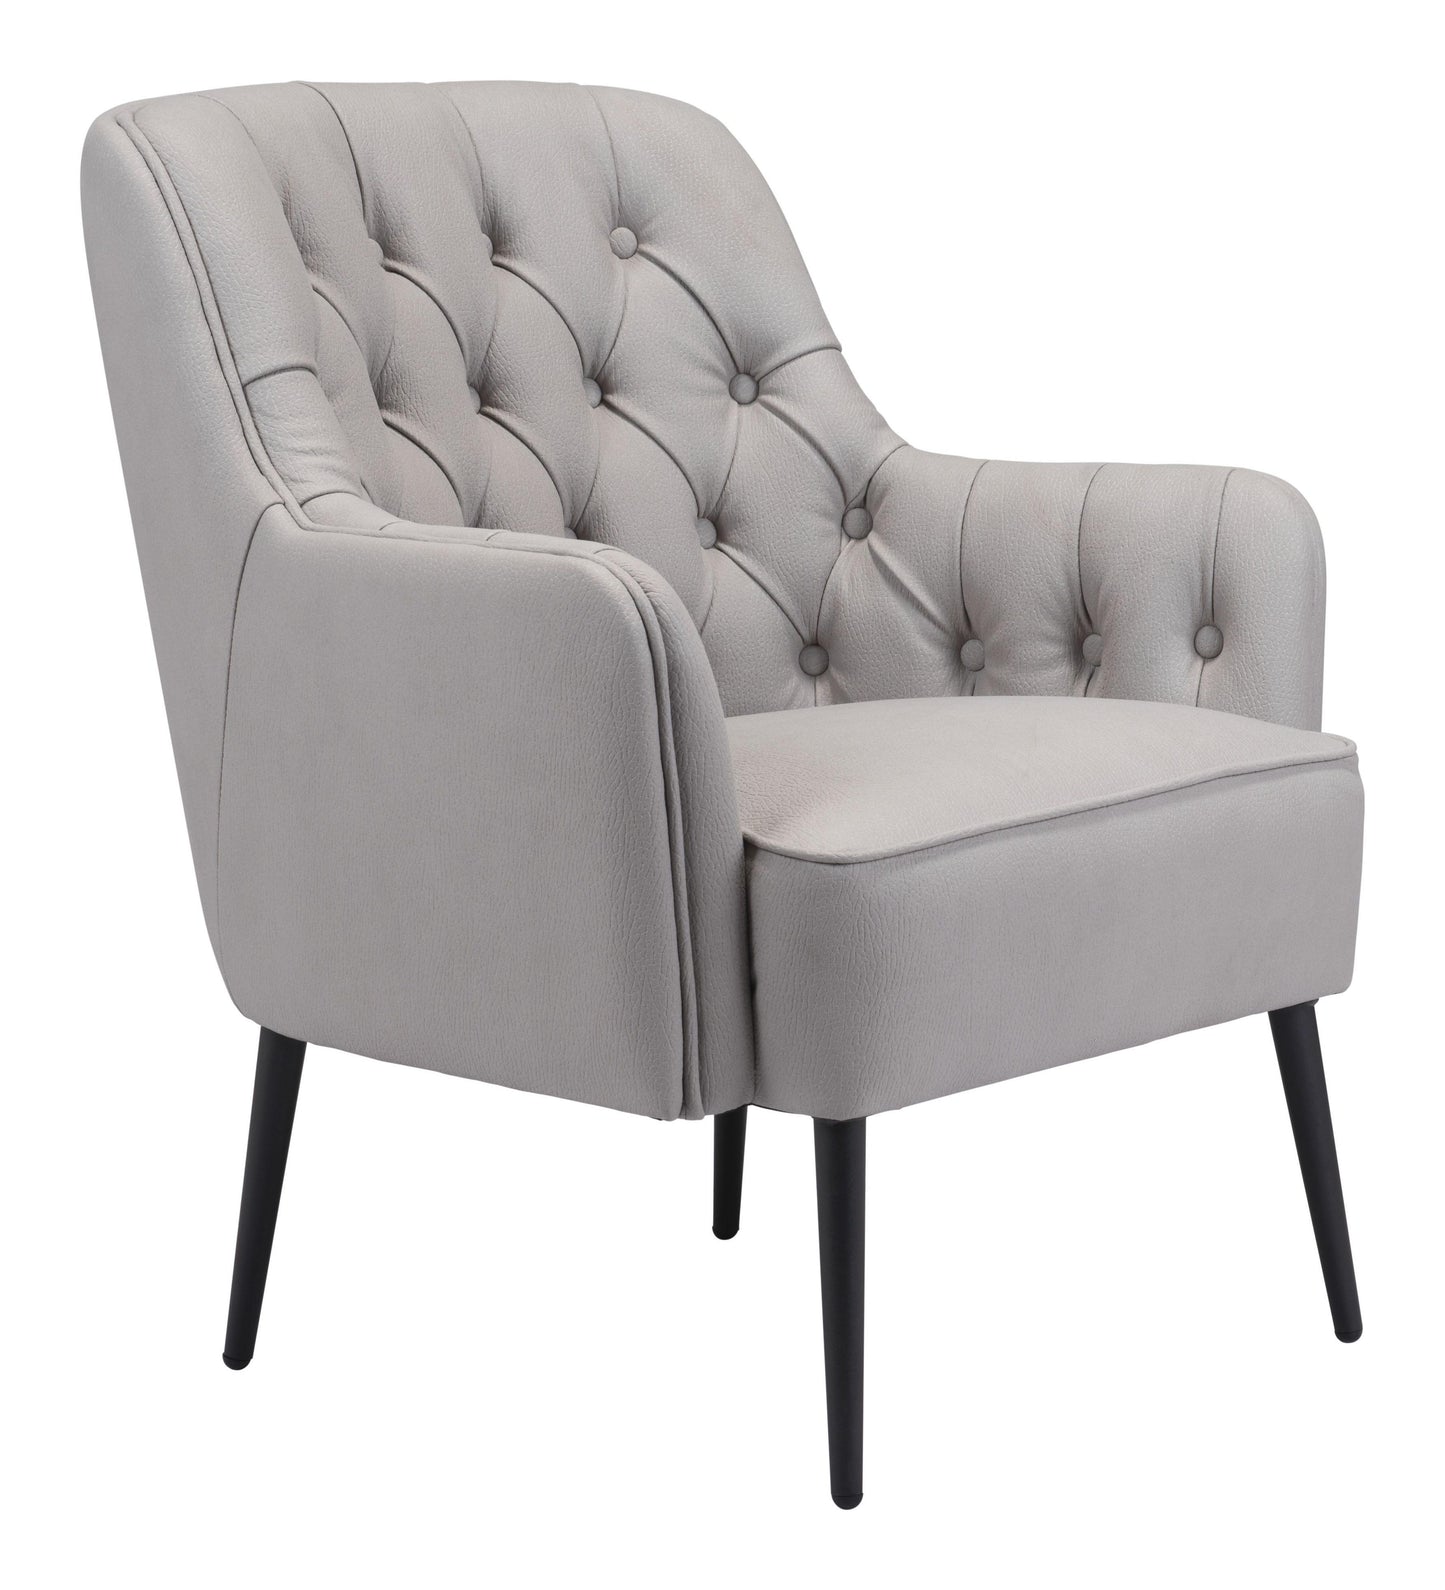 Tasmania Accent Chair Gray